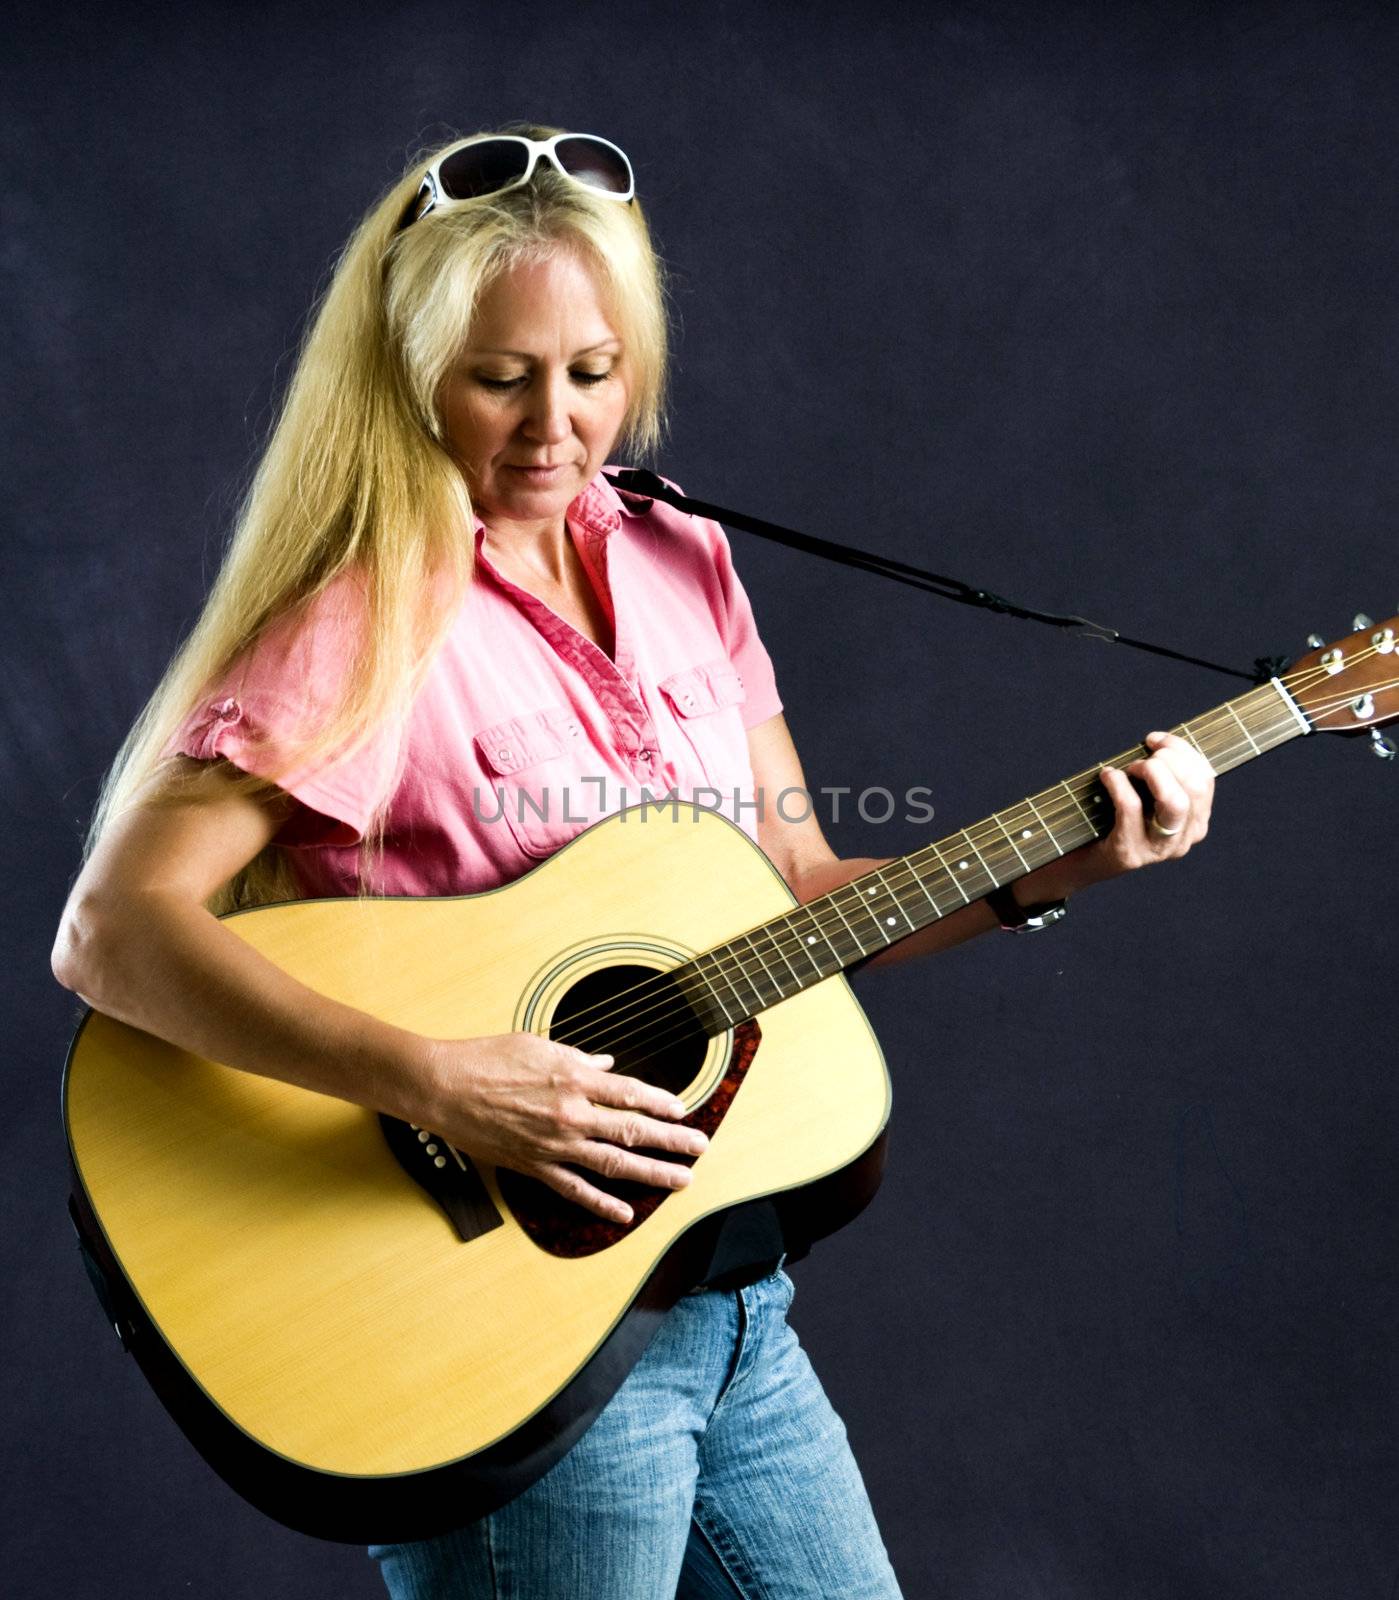 Pretty woman playing folk music on an acustical guitar.